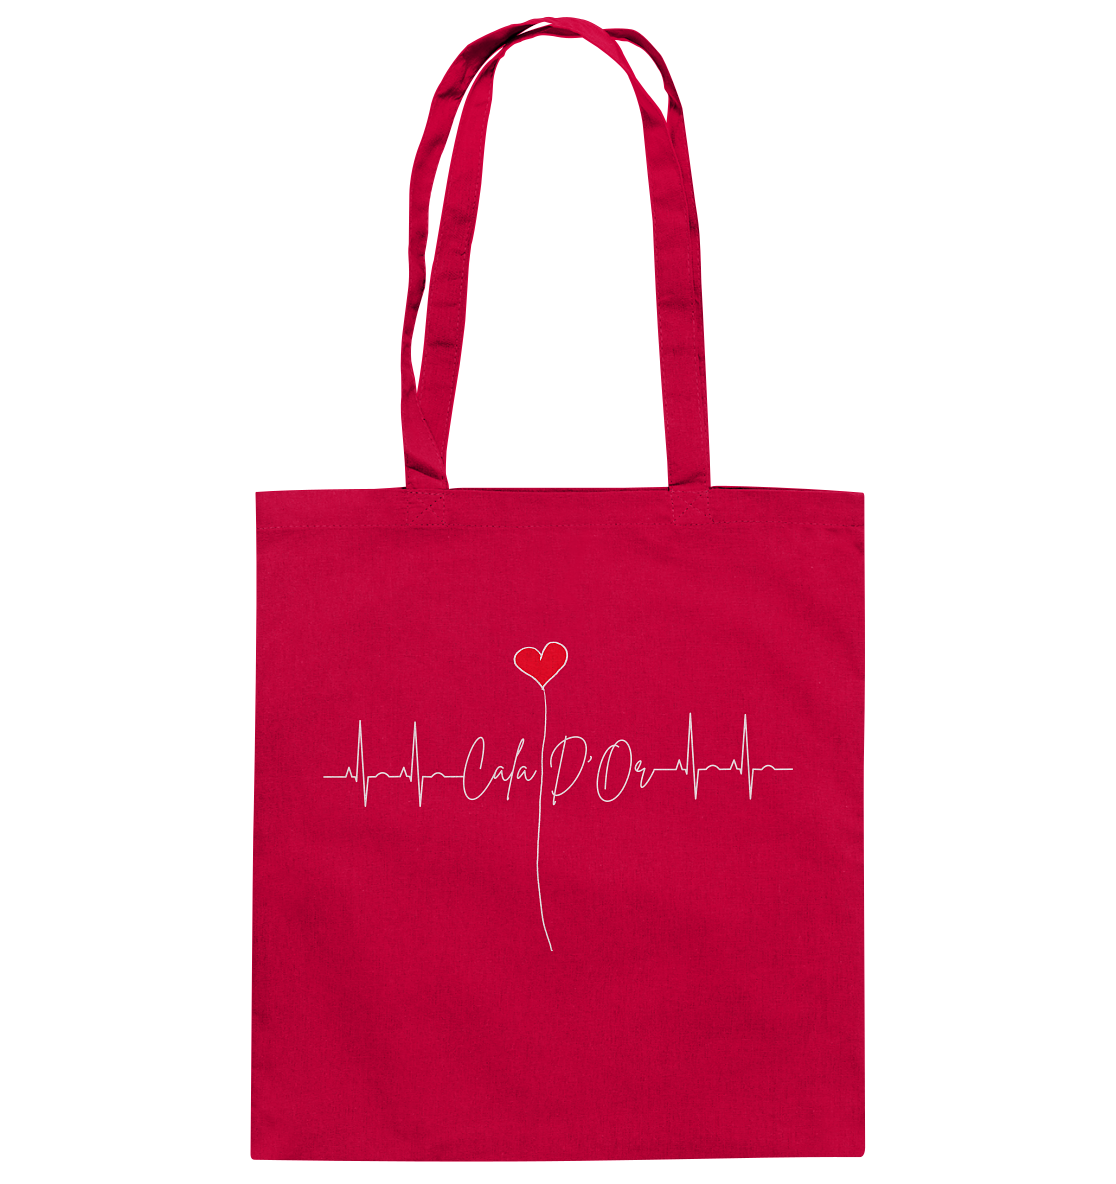 Rote Baumwolltragetaschen mit weißer Aufschrift Cala D'Or und einem Herz